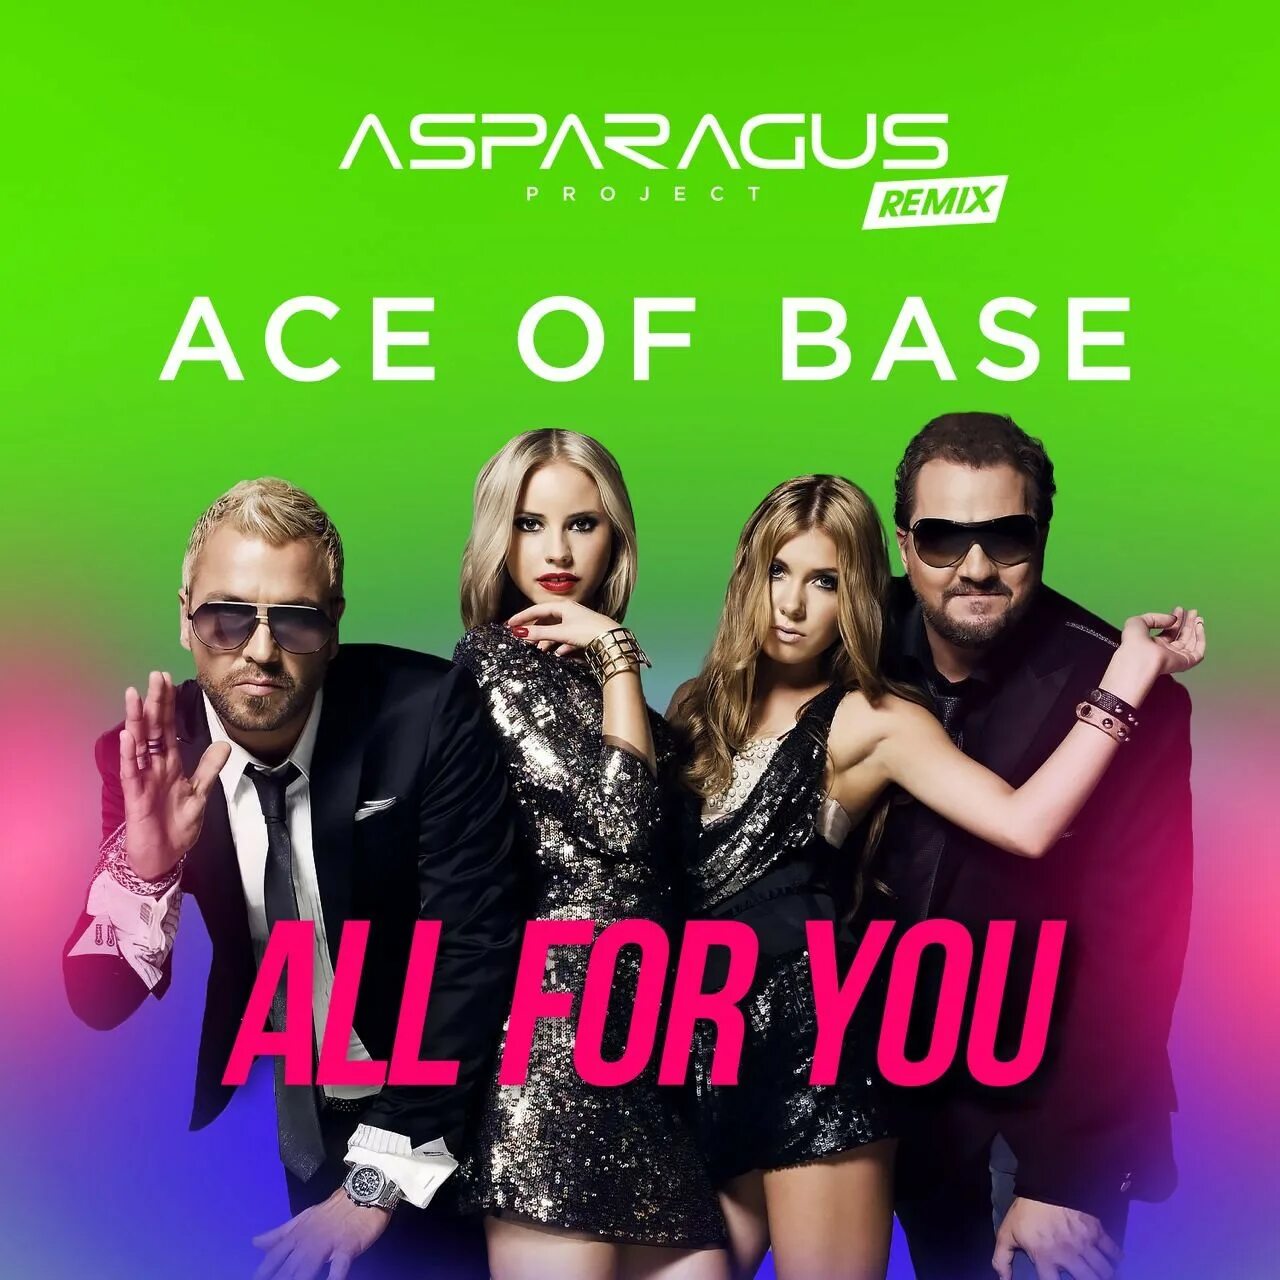 Ace of base все песни. Группа Ace of Base 2020. Ace of Base сейчас 2021. Ace of Base сейчас 2019. Ace of Base all for you.